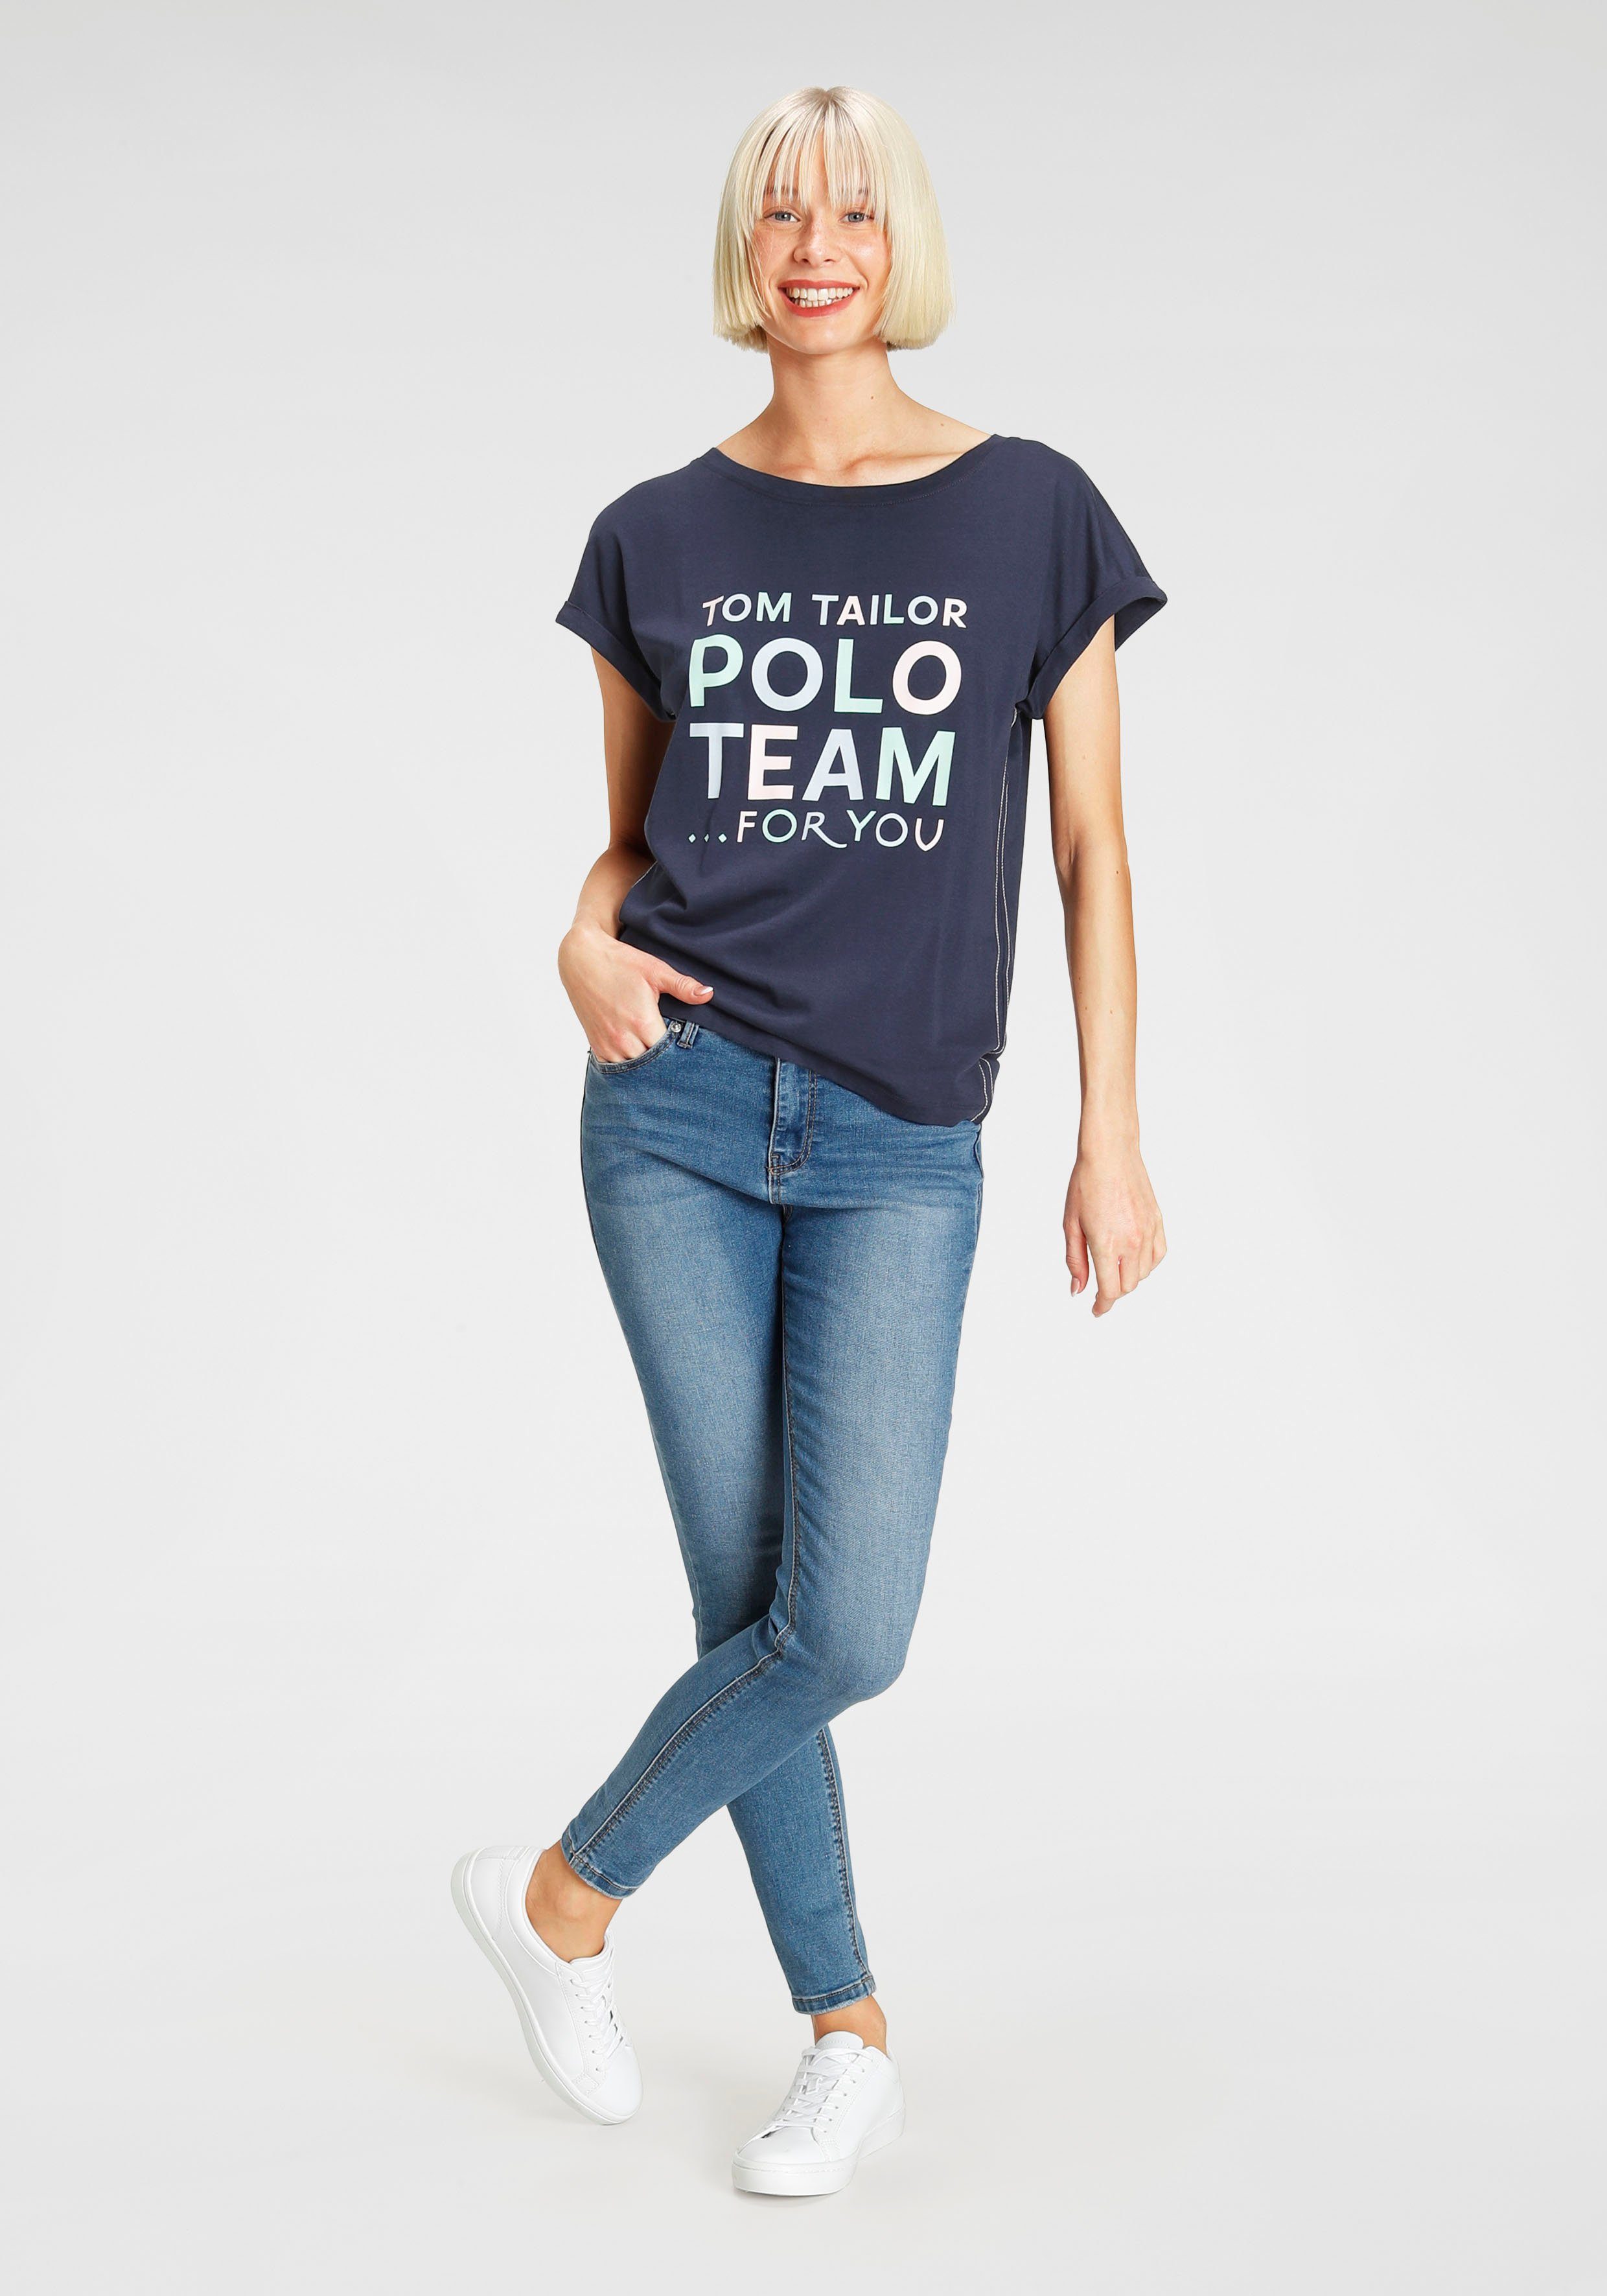 TOM TAILOR Polo Team Print-Shirt farbenfrohen Logo-Print großem